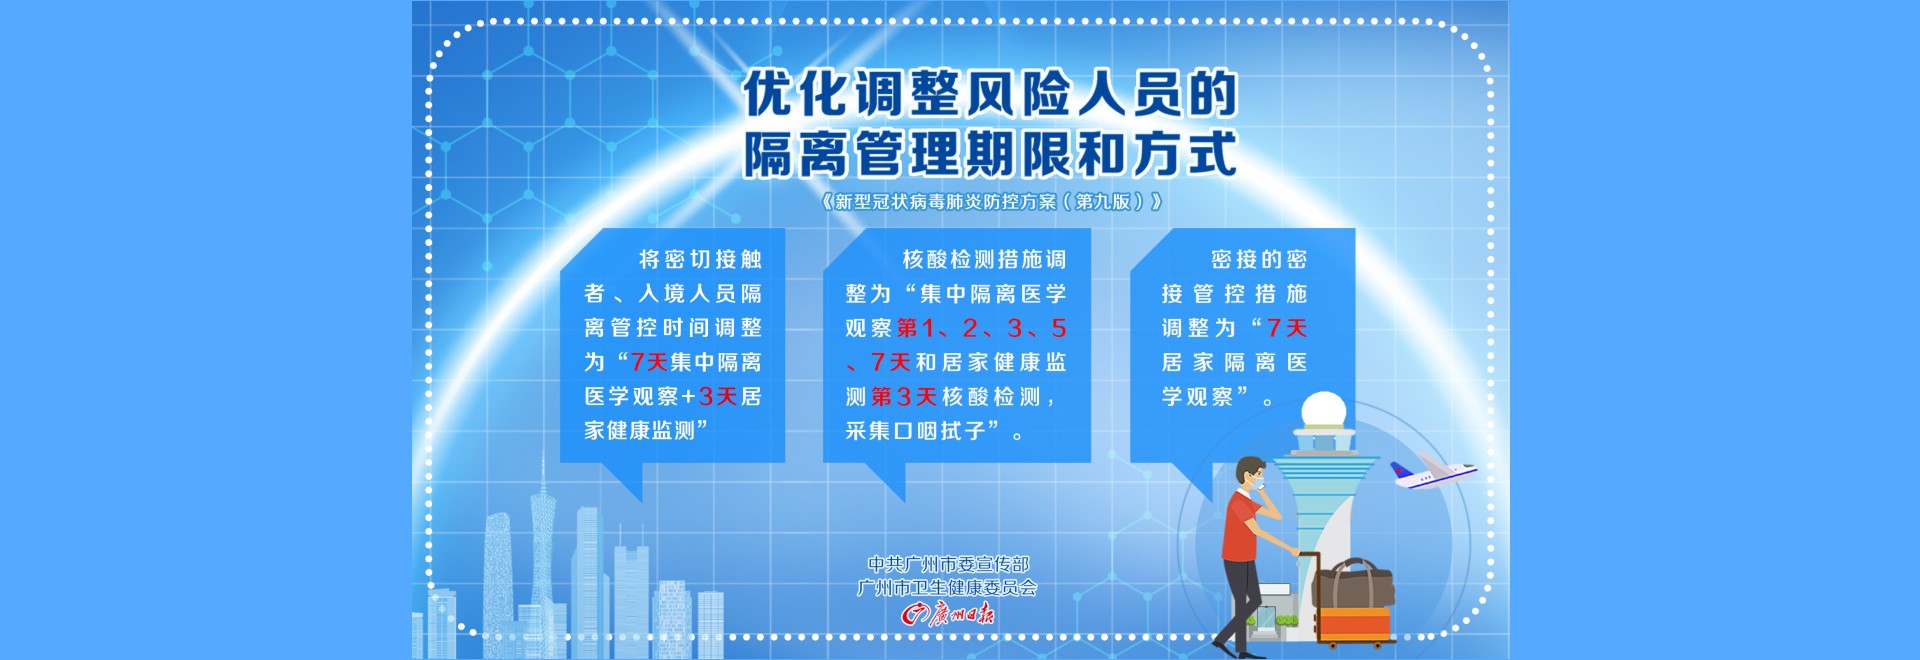 关于当前产品7天彩票下载·(中国)官方网站的成功案例等相关图片